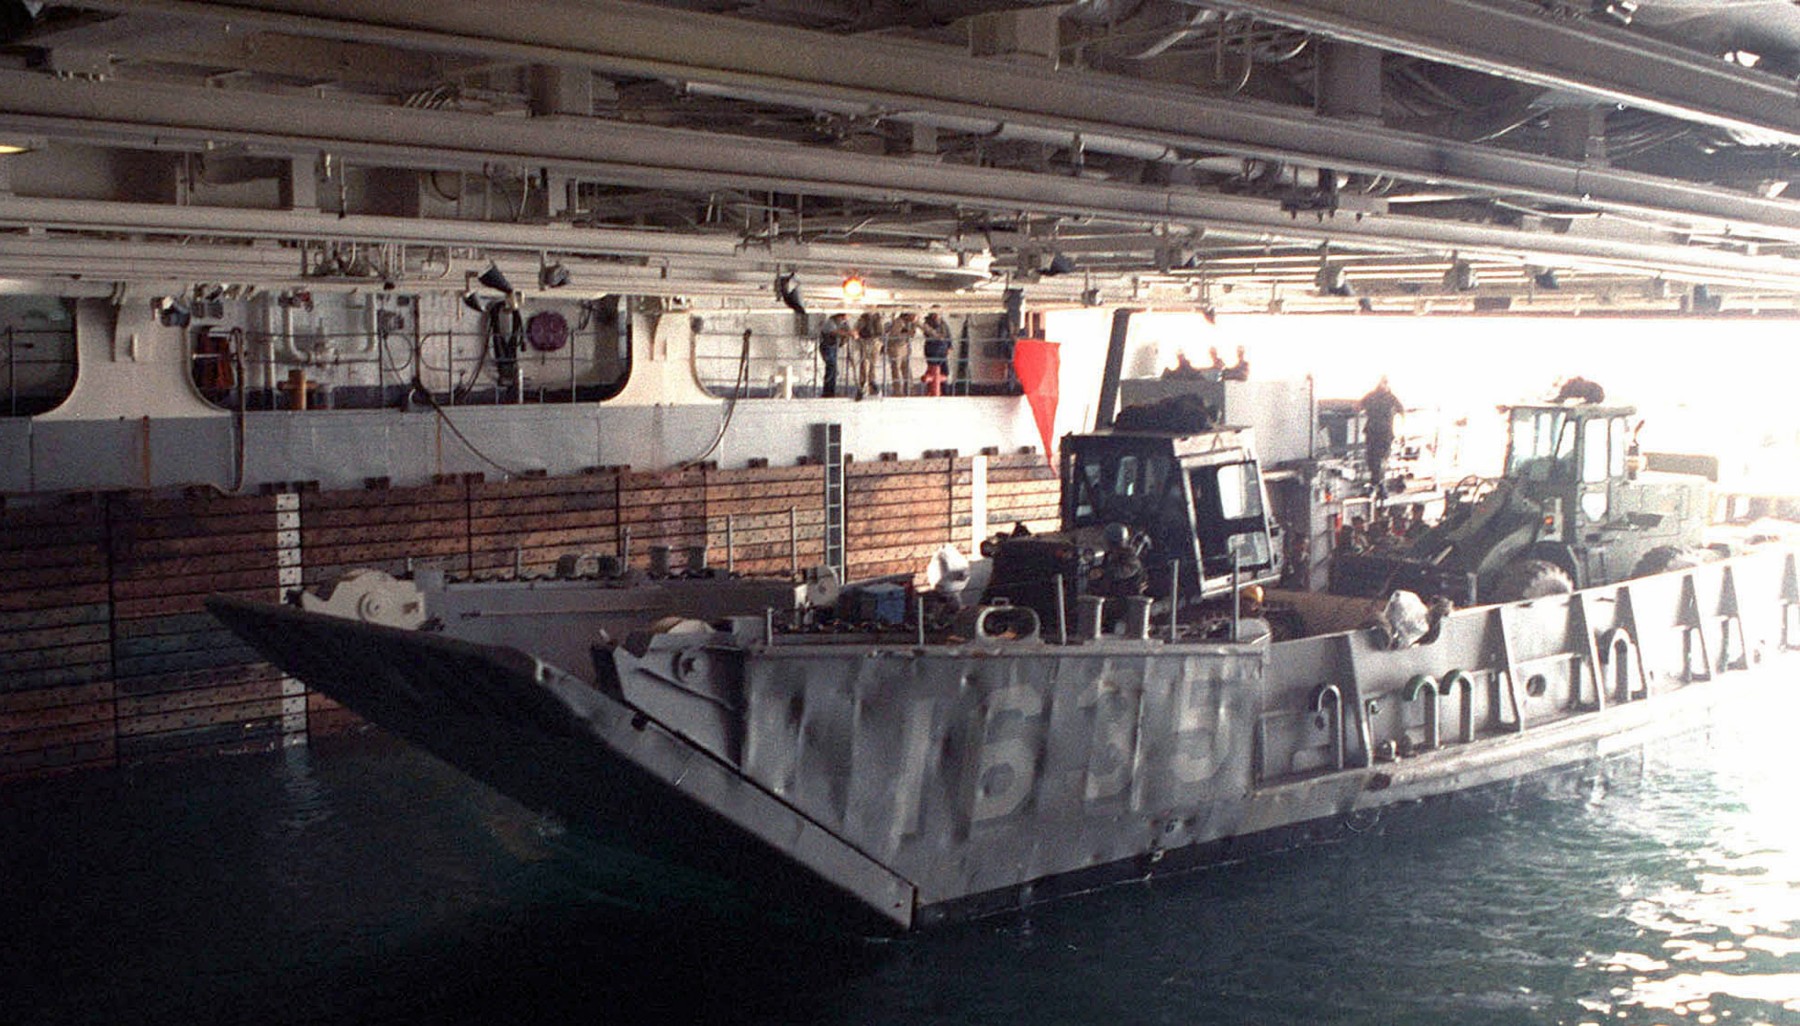 lha-1 uss tarawa amphibious assault ship us navy lcu well deck kernel blitz 95